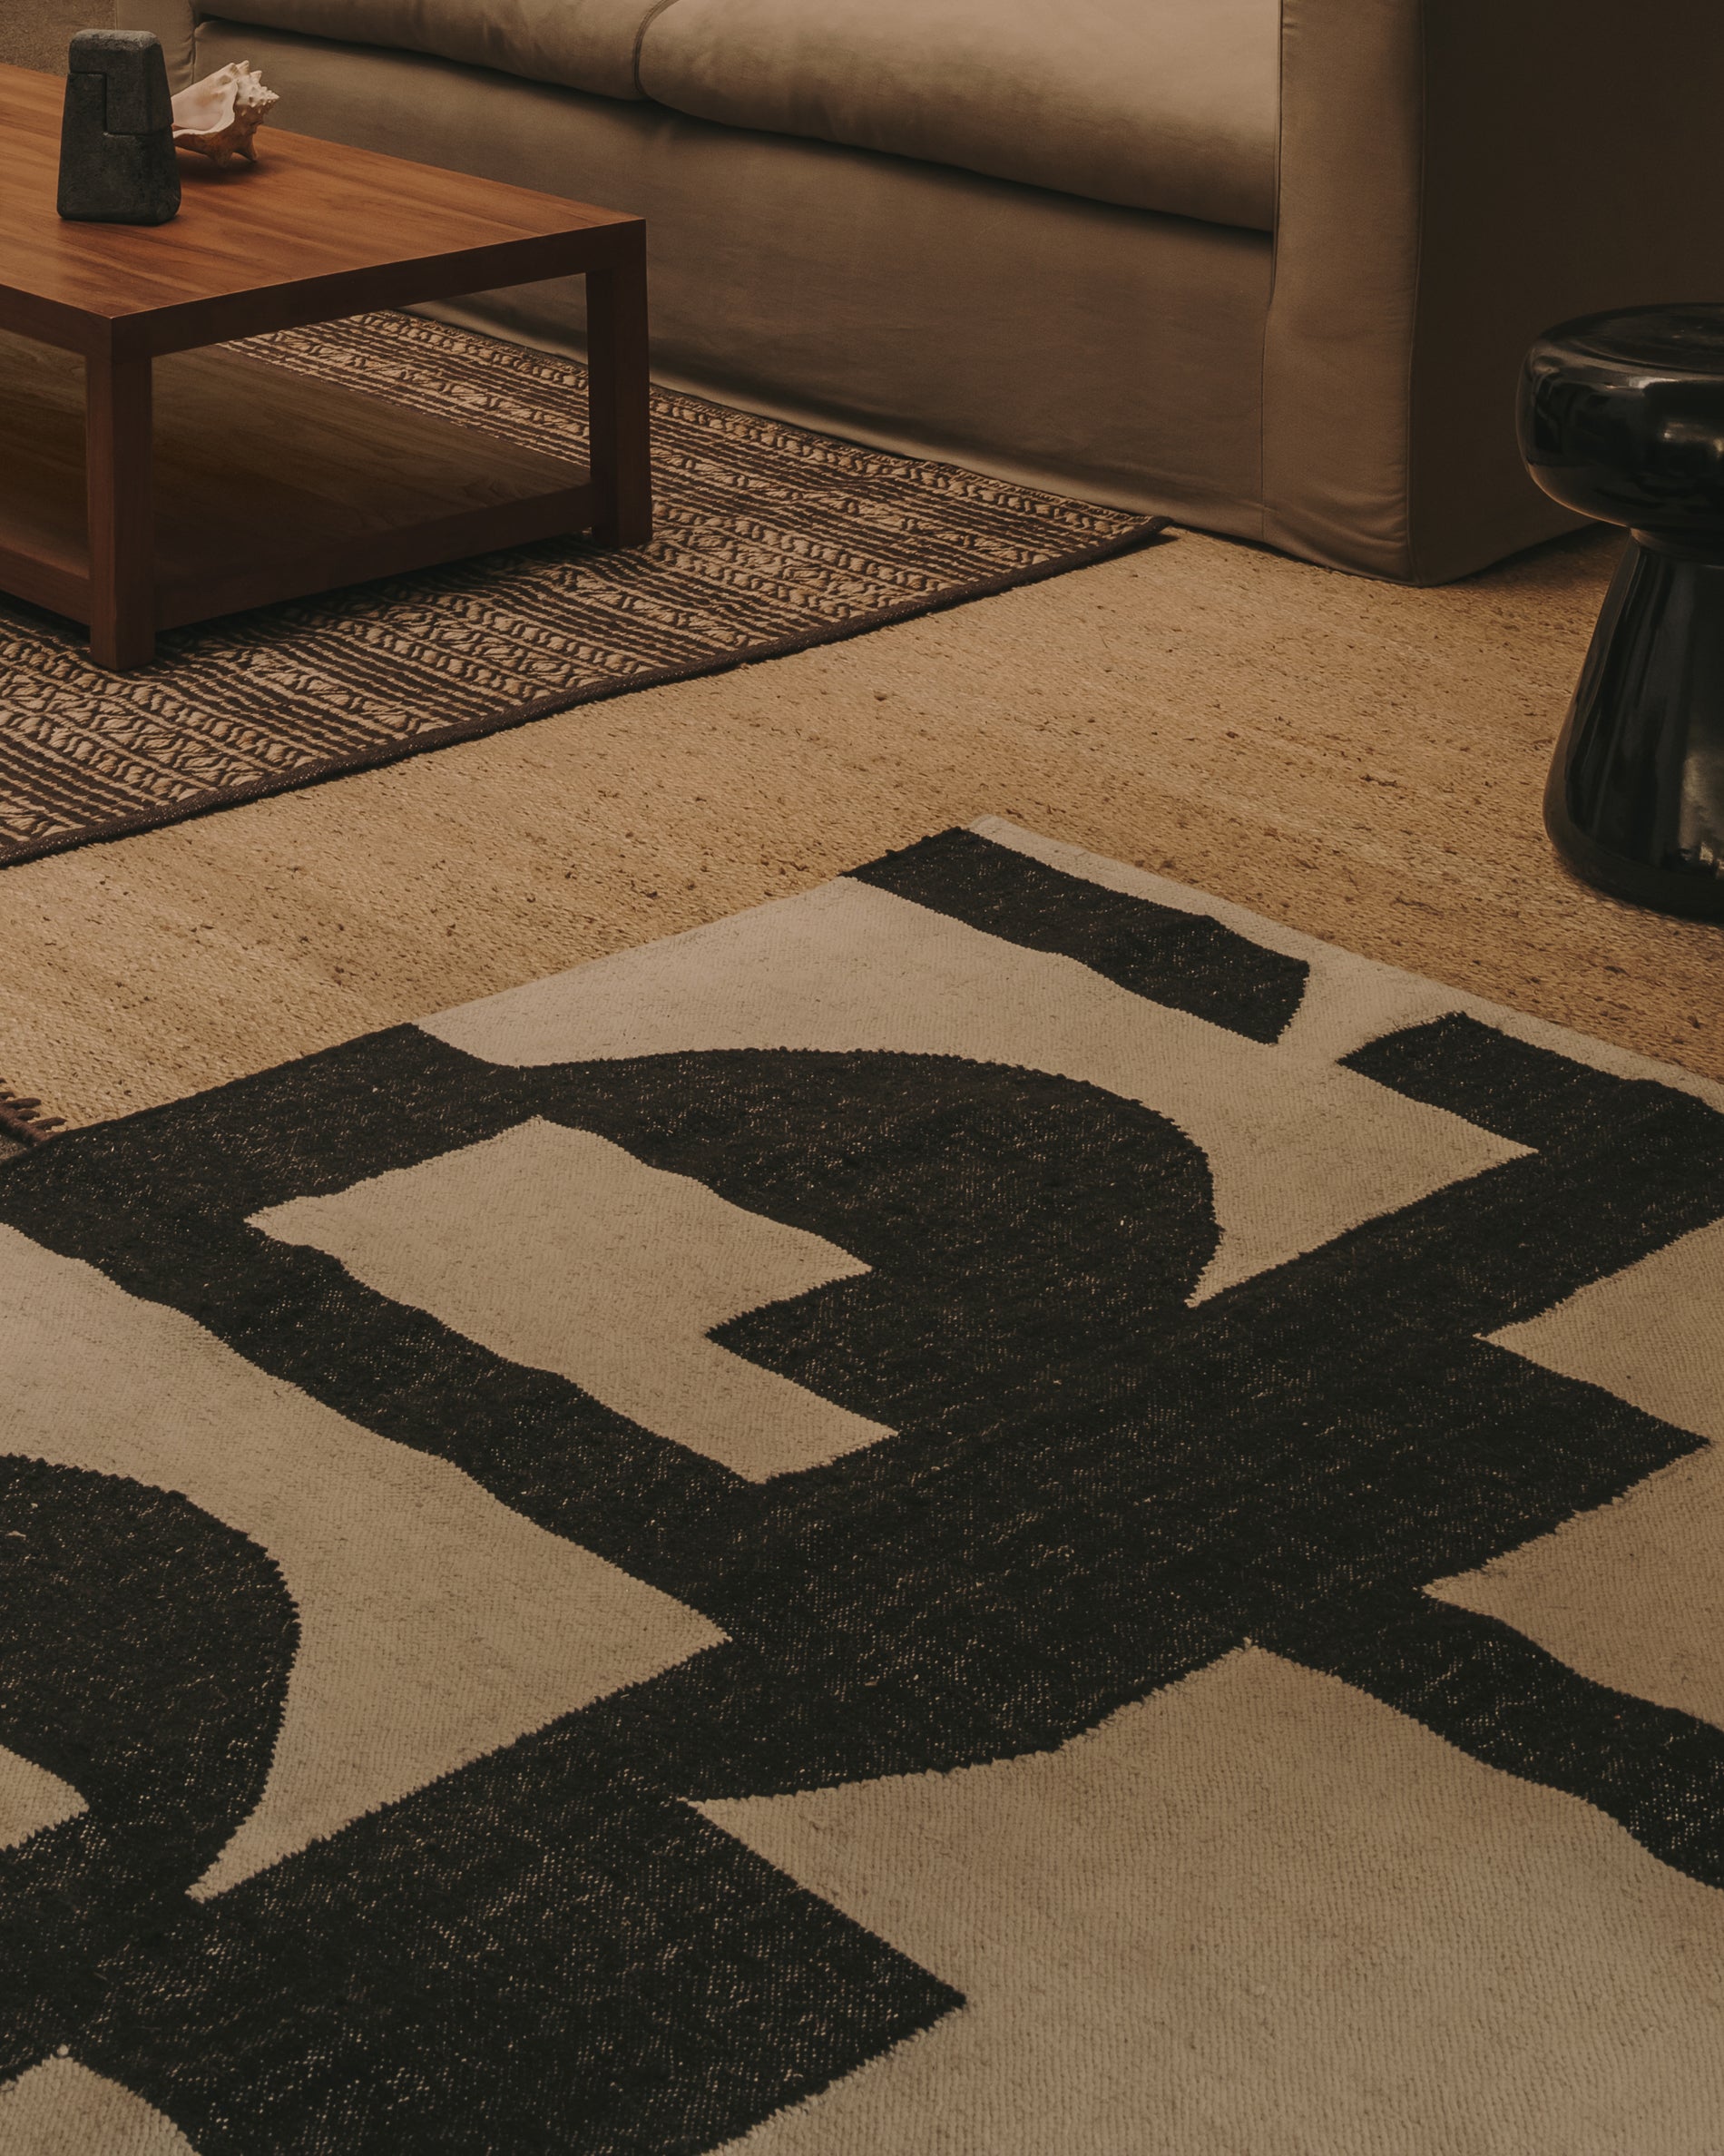 Sotty pamut szőnyeg fekete-fehérben 160 x 230 cm